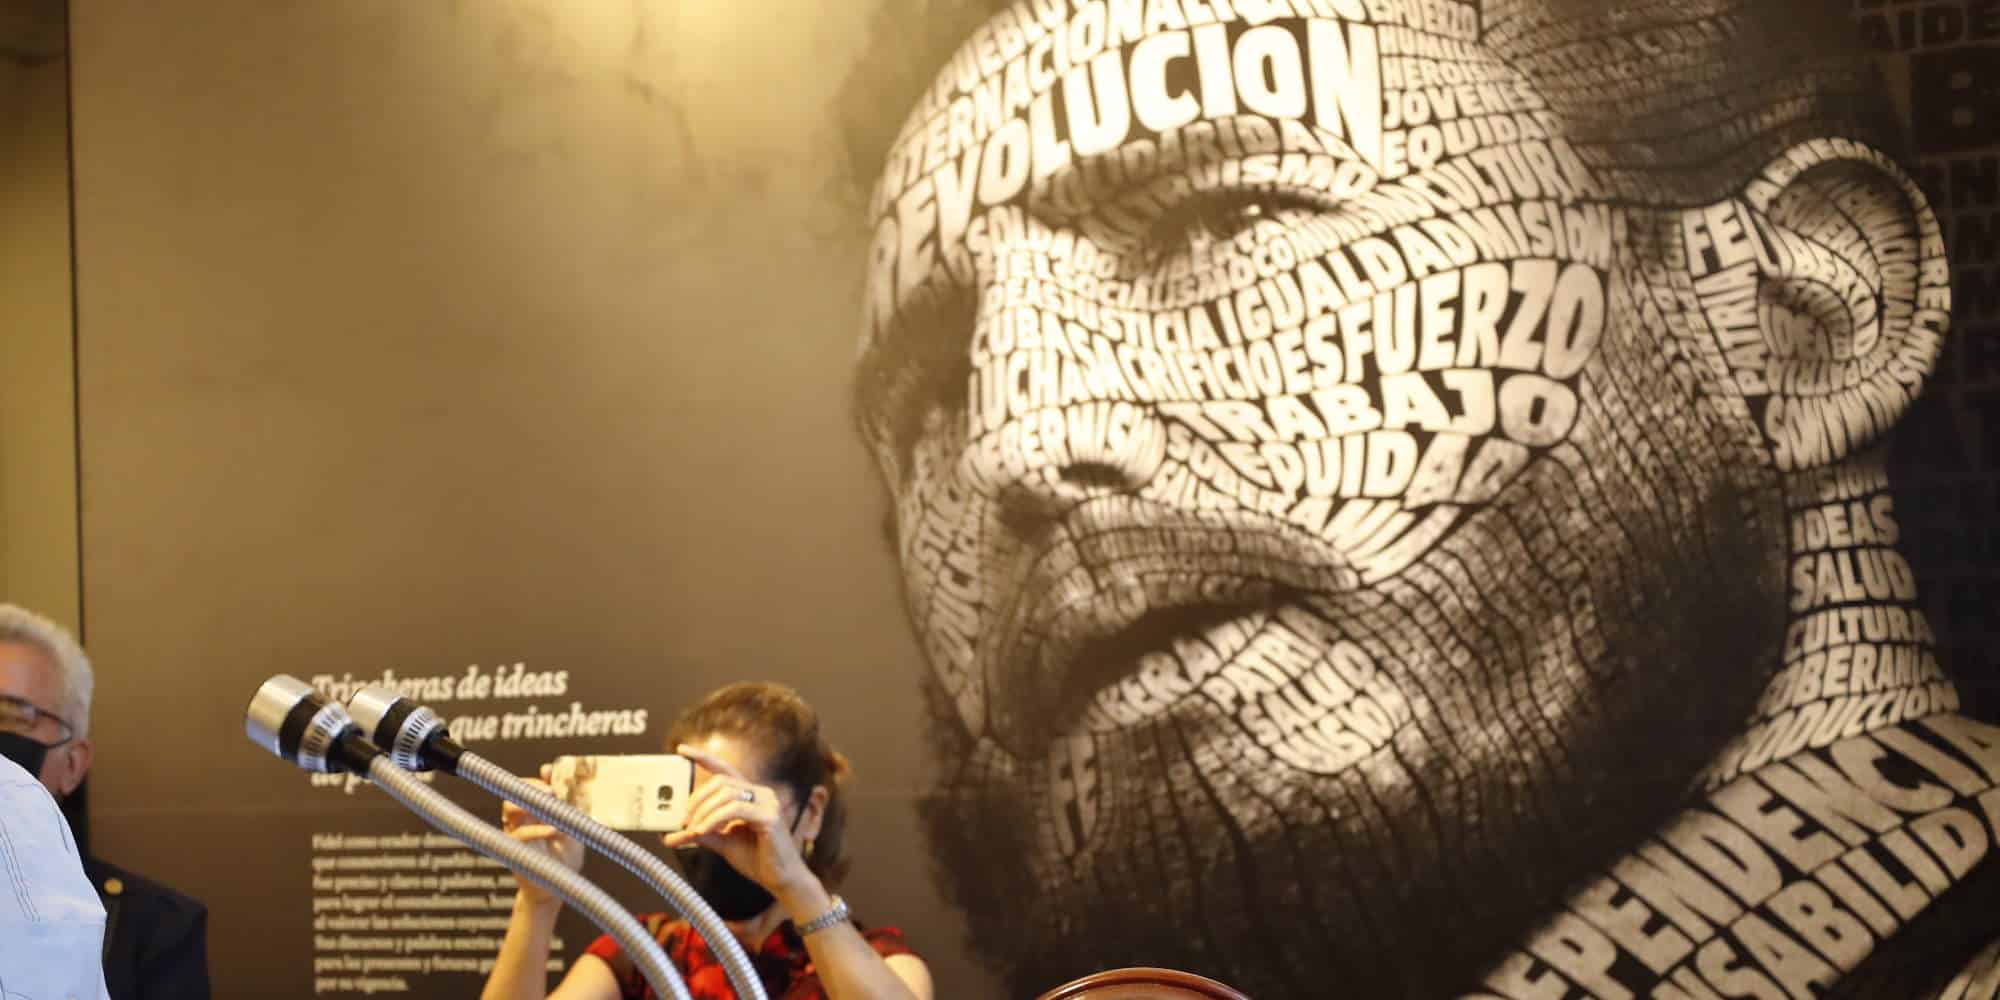 Αφίσα με τον πρωτεργάτη της κουβανικής επανάστασης, Φιντέλ Κάστρο